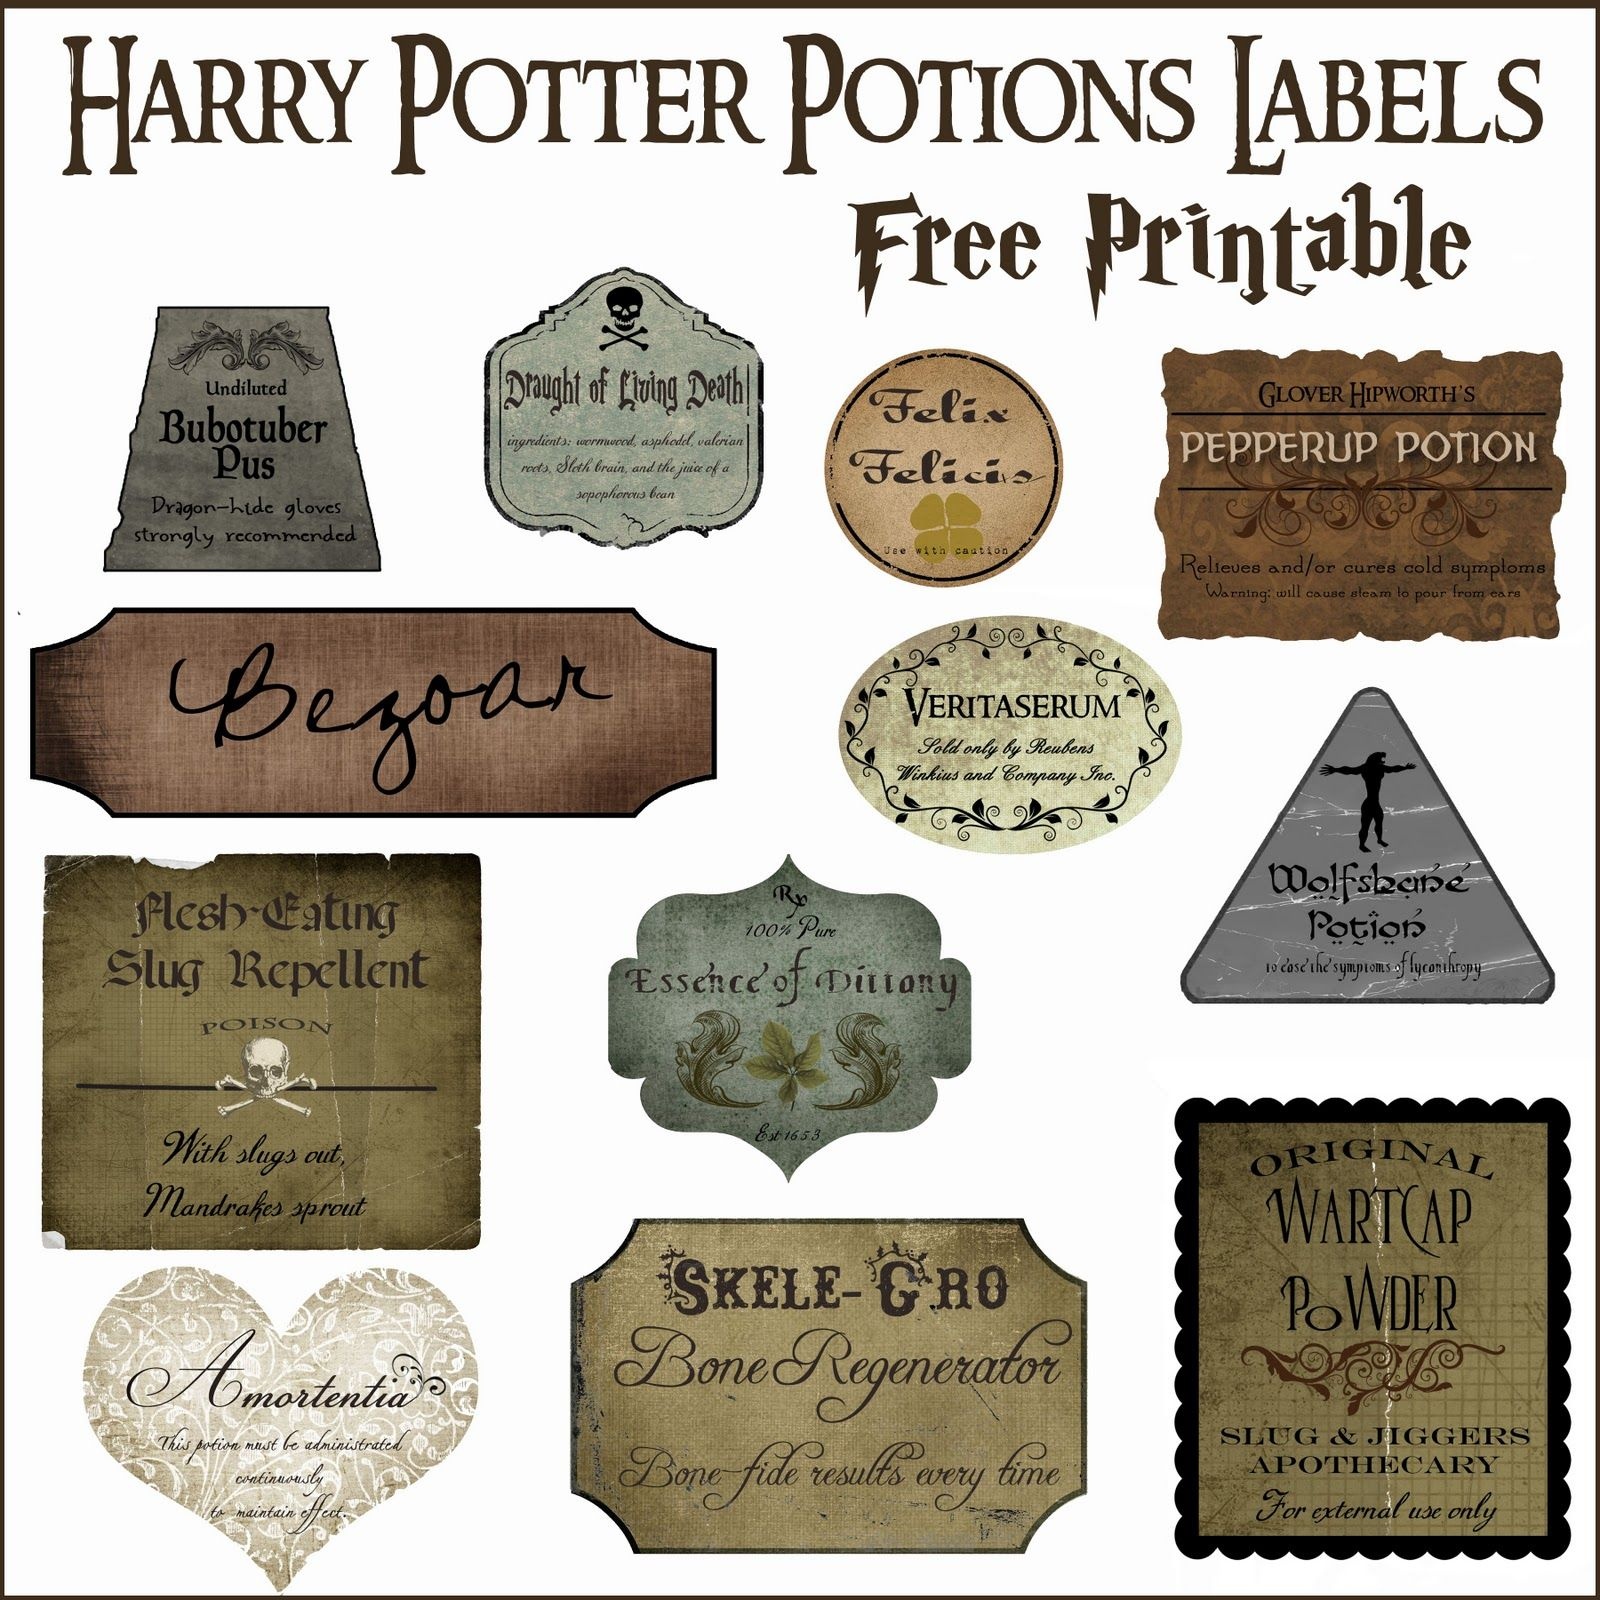 Harry Potter Potion Label Printables | Diy Home Decor Ideas | Harry - Free Printable Potion Labels